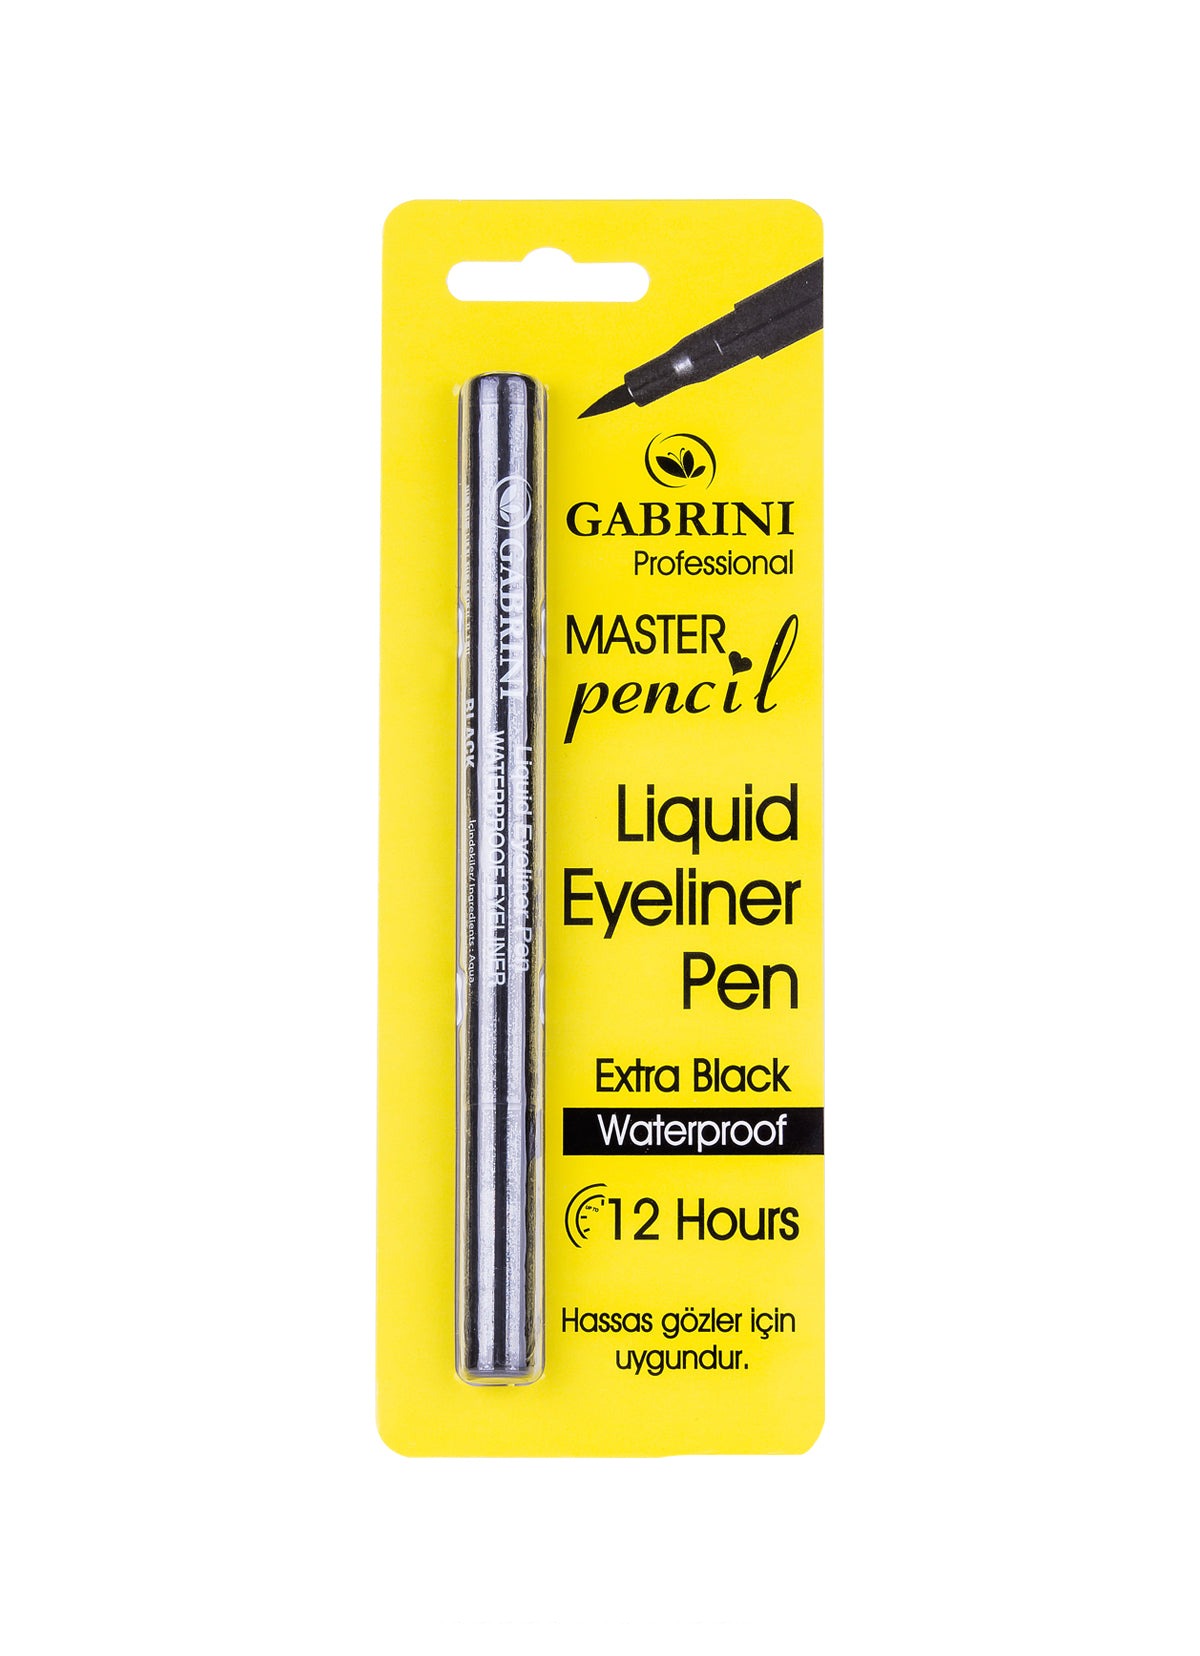 Gabrini Liquid Eye Liner Pen Gabrini